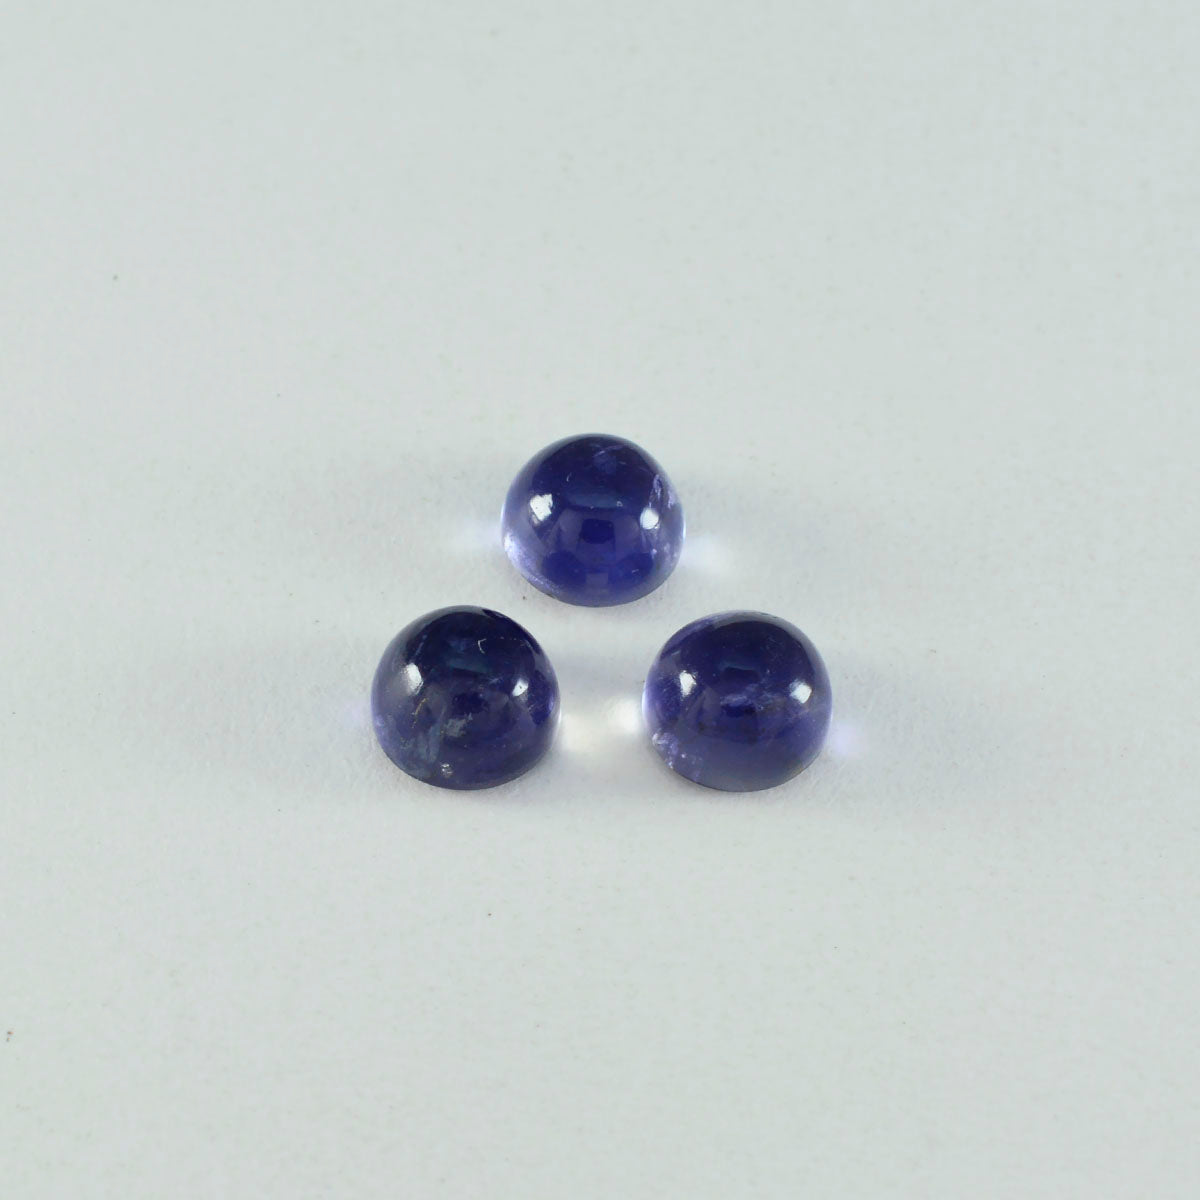 Riyogems 1PC blauwe ioliet cabochon 10x10 mm ronde vorm goede kwaliteit losse edelsteen